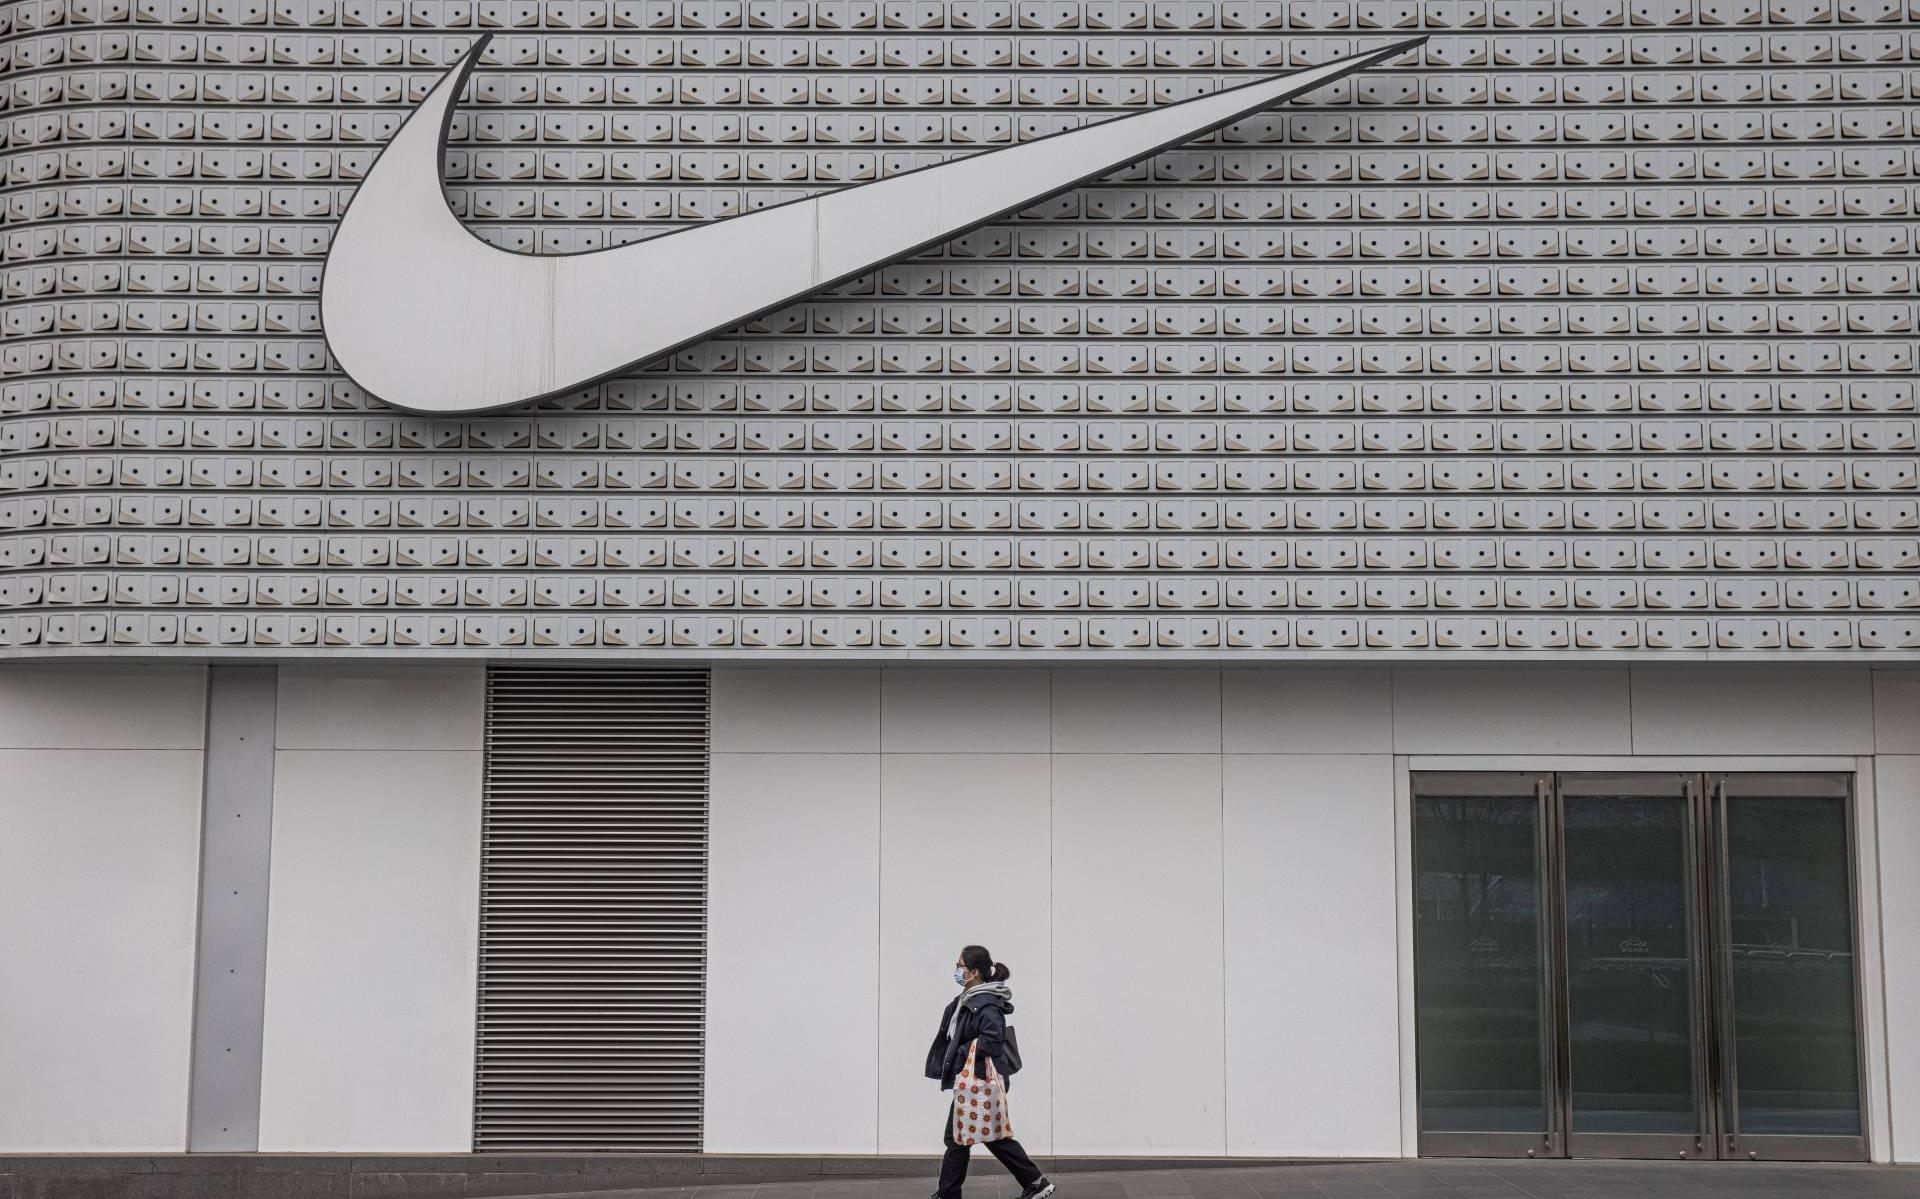 Piket struik Gehakt Winkels Nike verkopen weer meer dan voor coronapandemie - Leeuwarder Courant